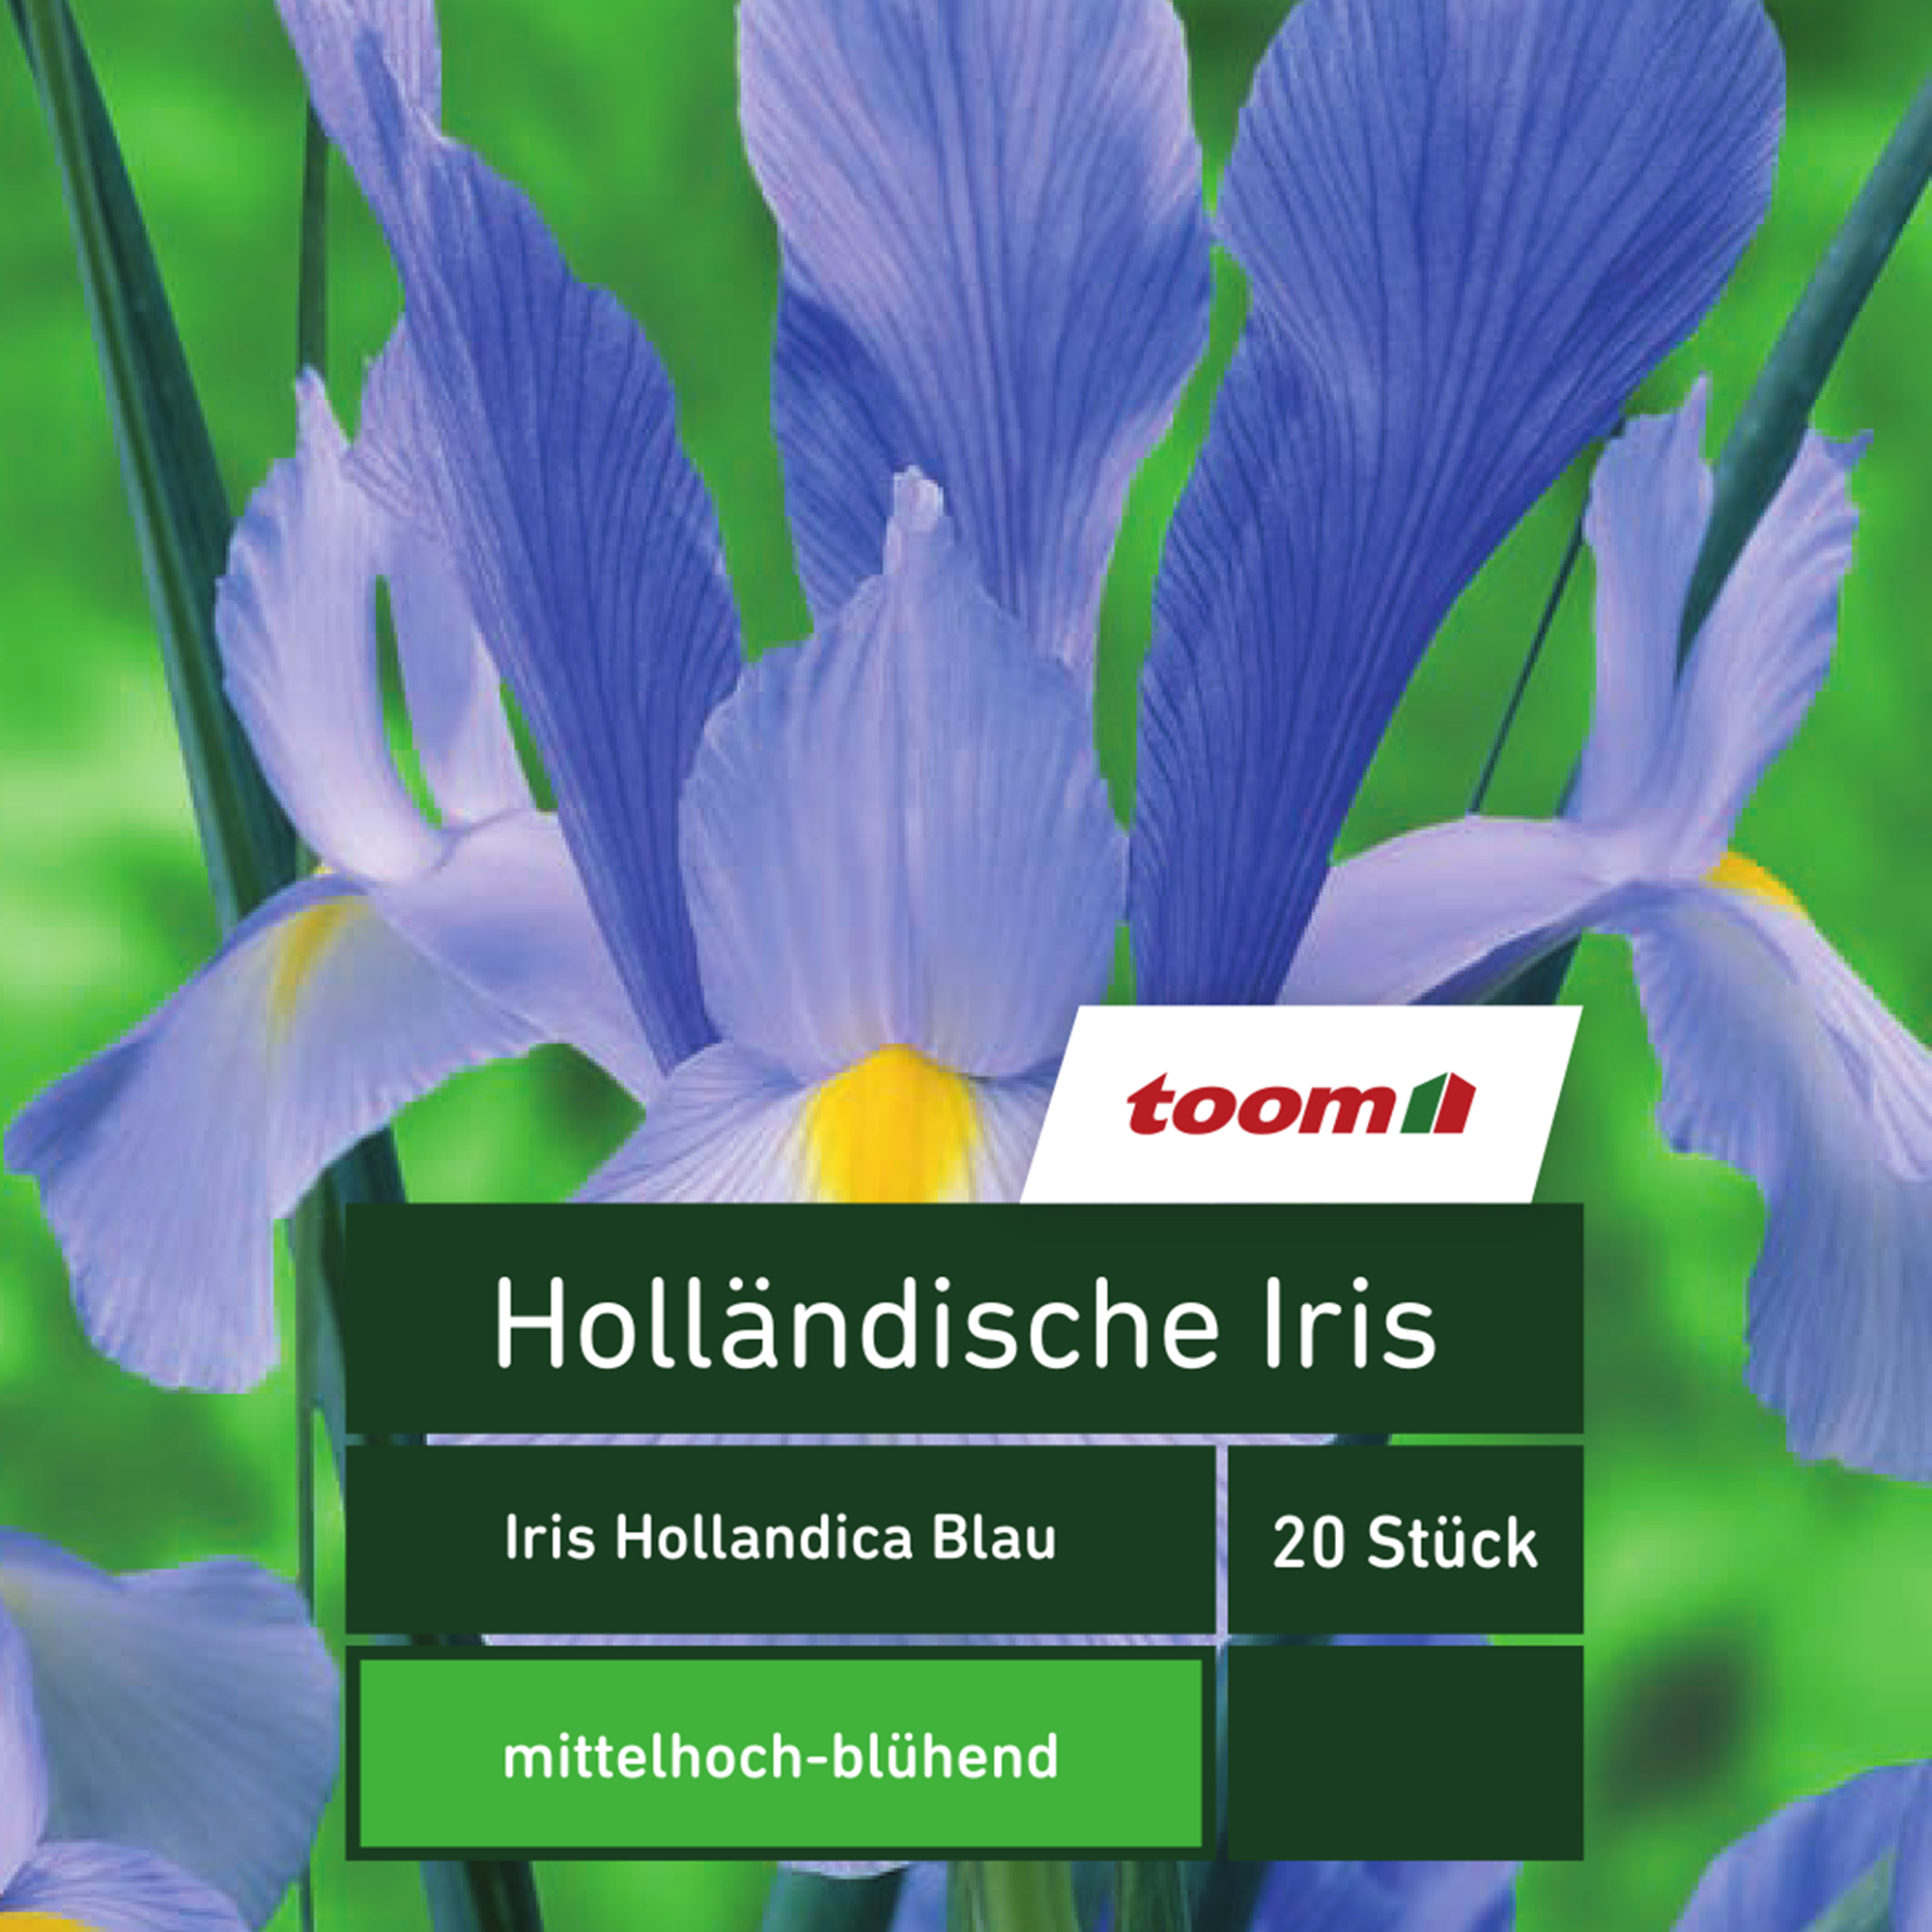 Holländische Iris 'Iris Hollandica', 20 Stück, blau + product picture